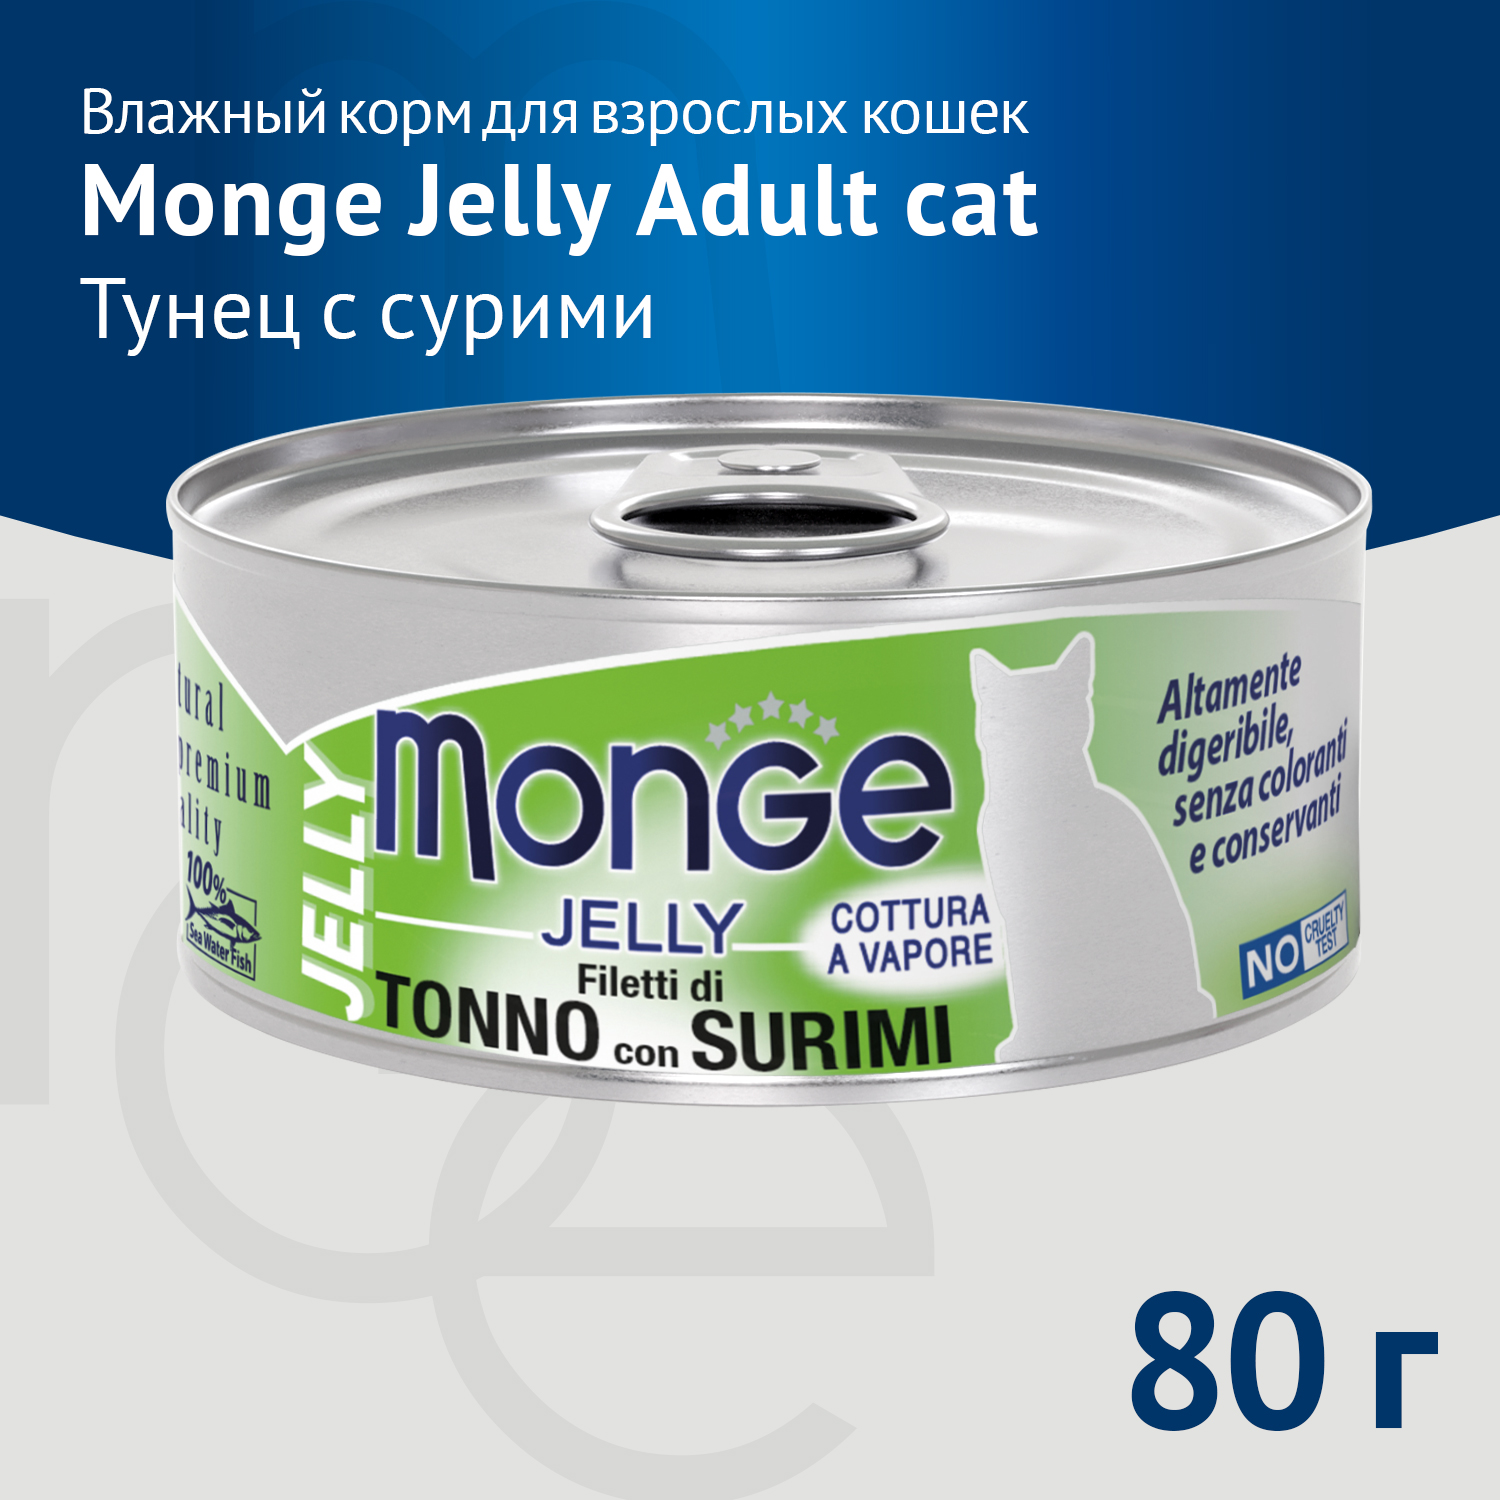 Влажный корм Monge jelly Adult cat для взрослых кошек с желтоперым тунцом и сурими, консервы 80 г